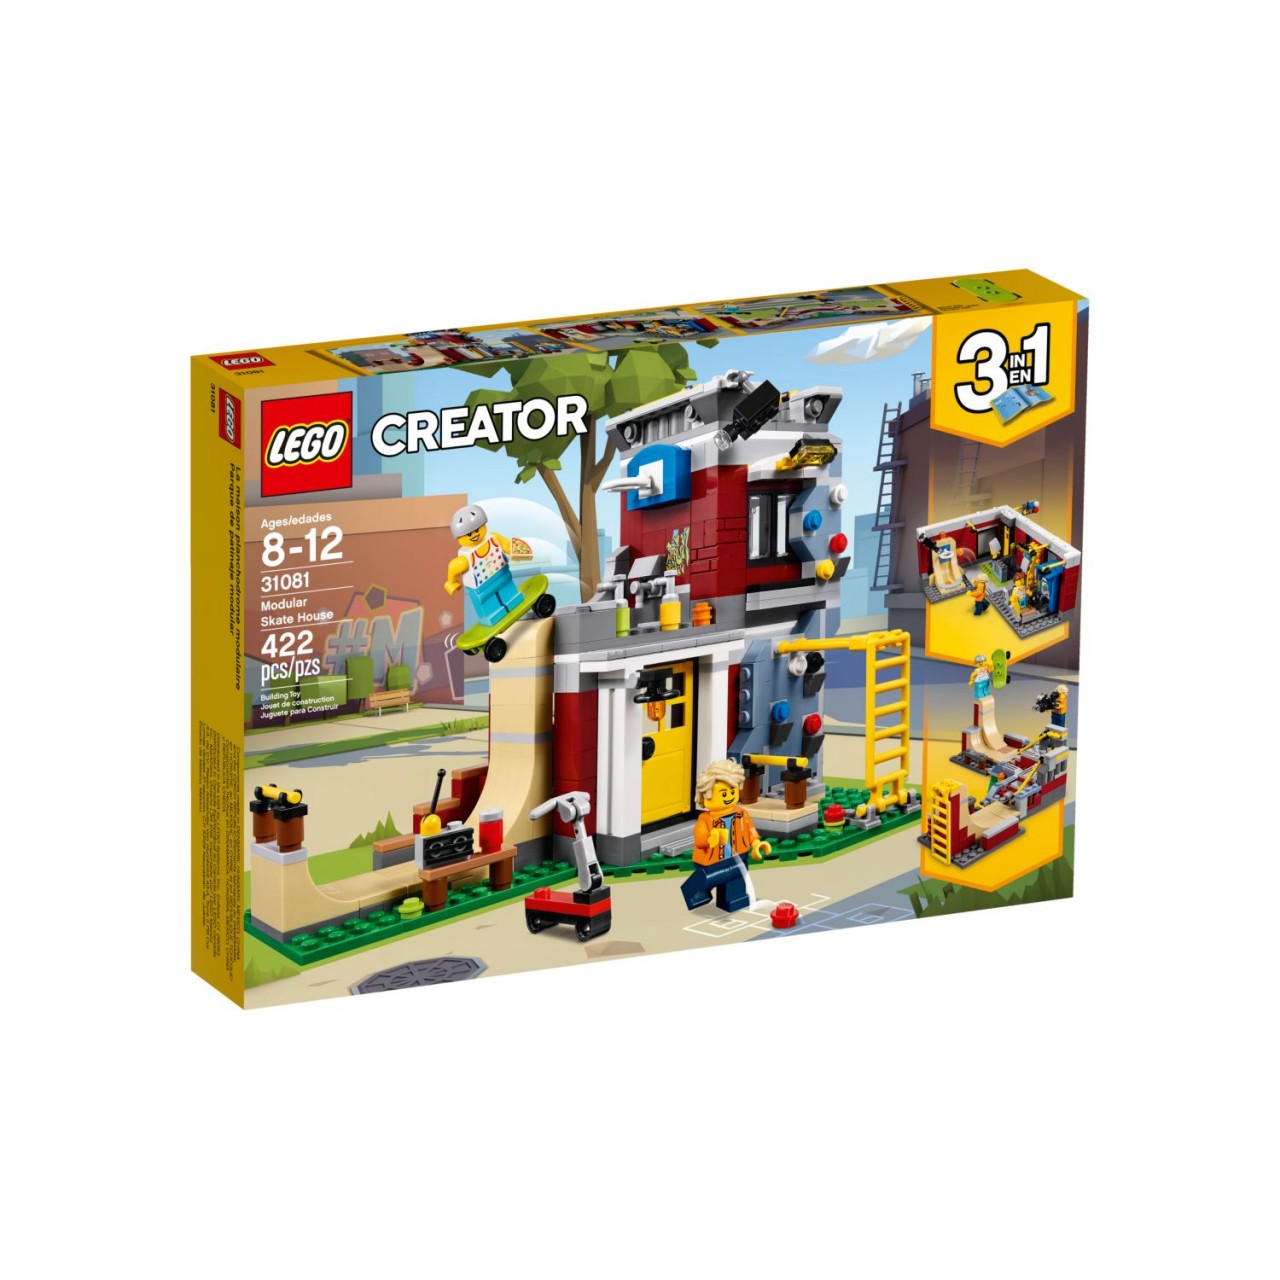 LEGO CREATOR 31081 Modulares Freizeitzentrum